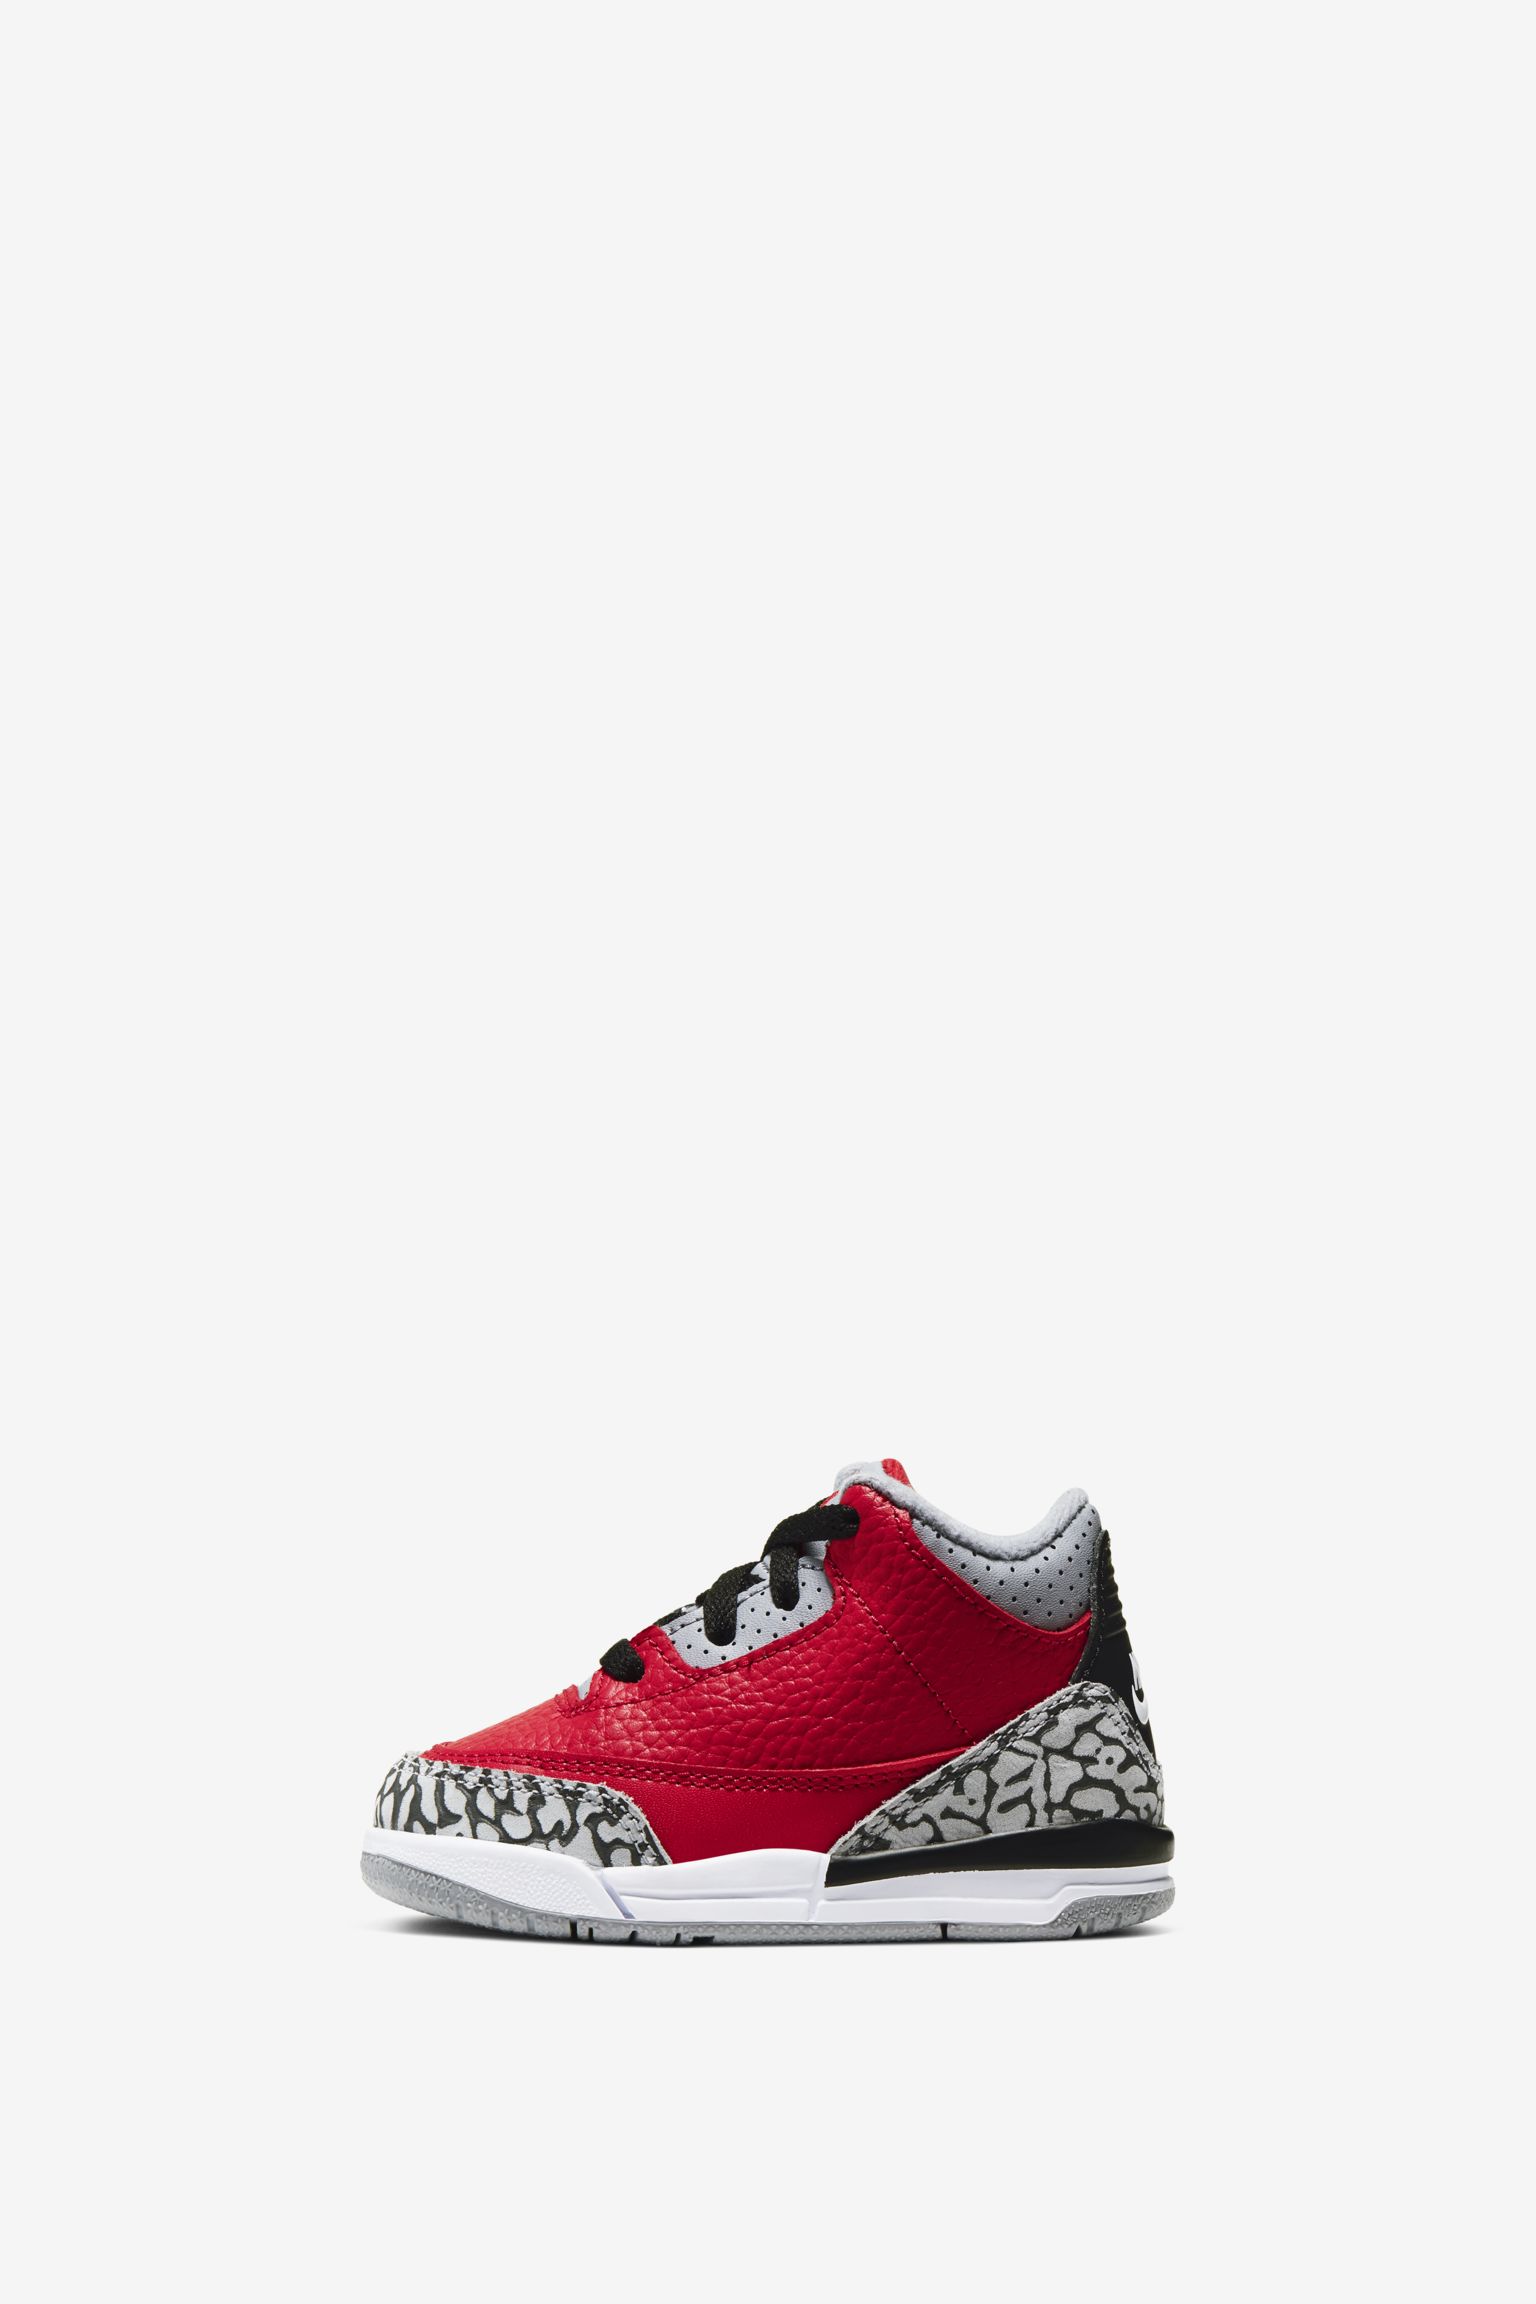 Air Jordan III 'Jordan Unite Collection' Release Date. Nike SNKRS